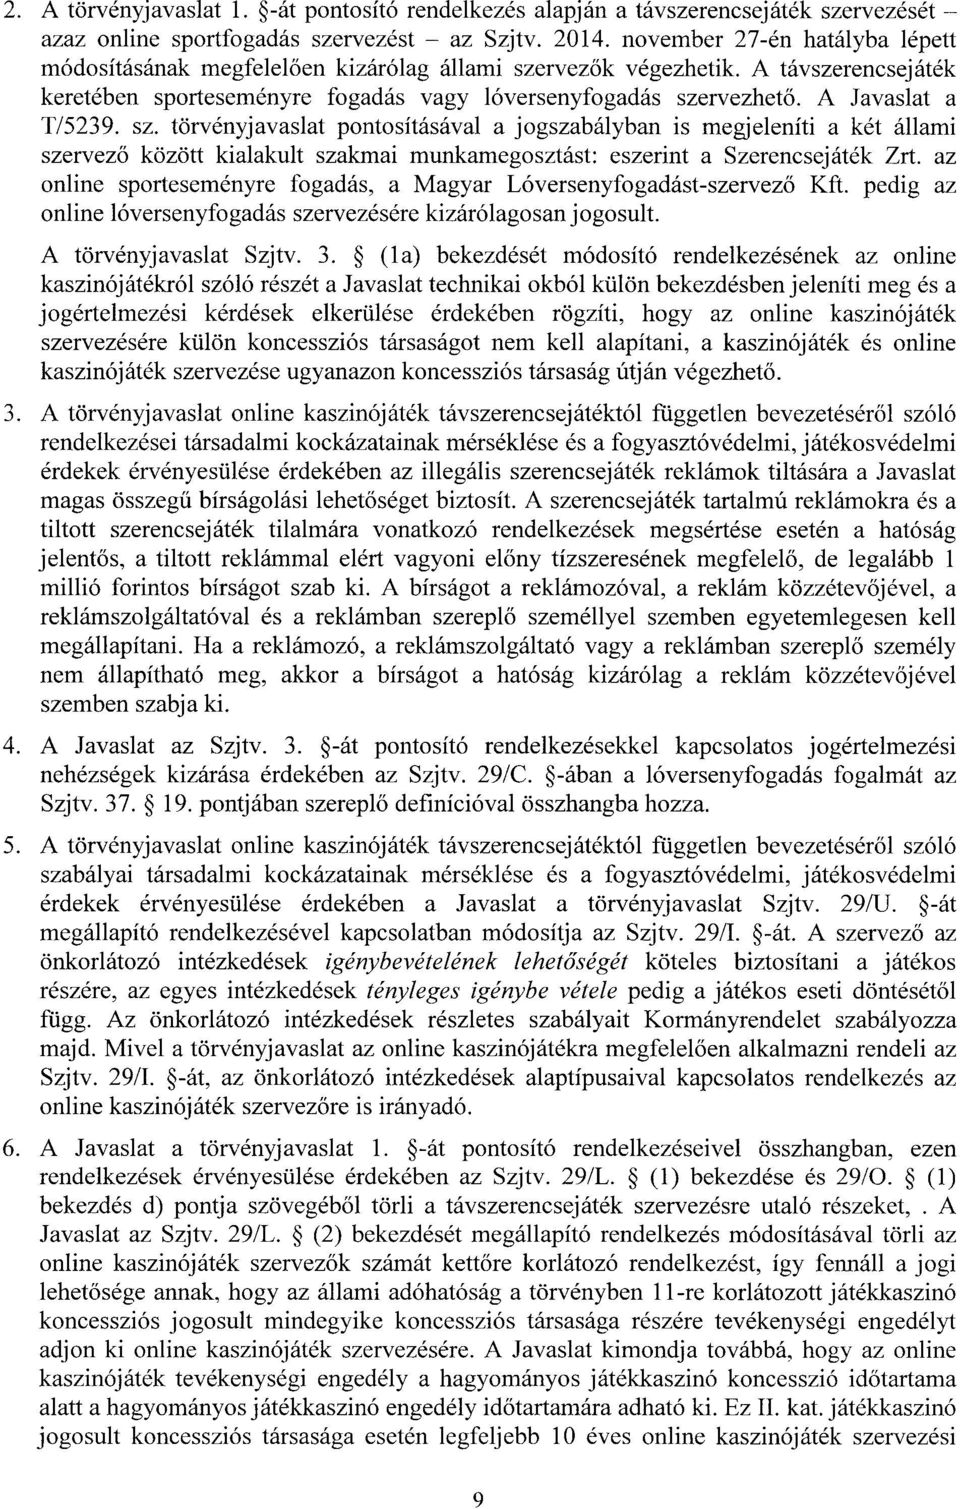 A Javaslat a T/5239. sz. törvényjavaslat pontosításával a jogszabályban is megjeleníti a két állami szervez ő között kialakult szakmai munkamegosztást: eszerint a Szerencsejáték Zrt.